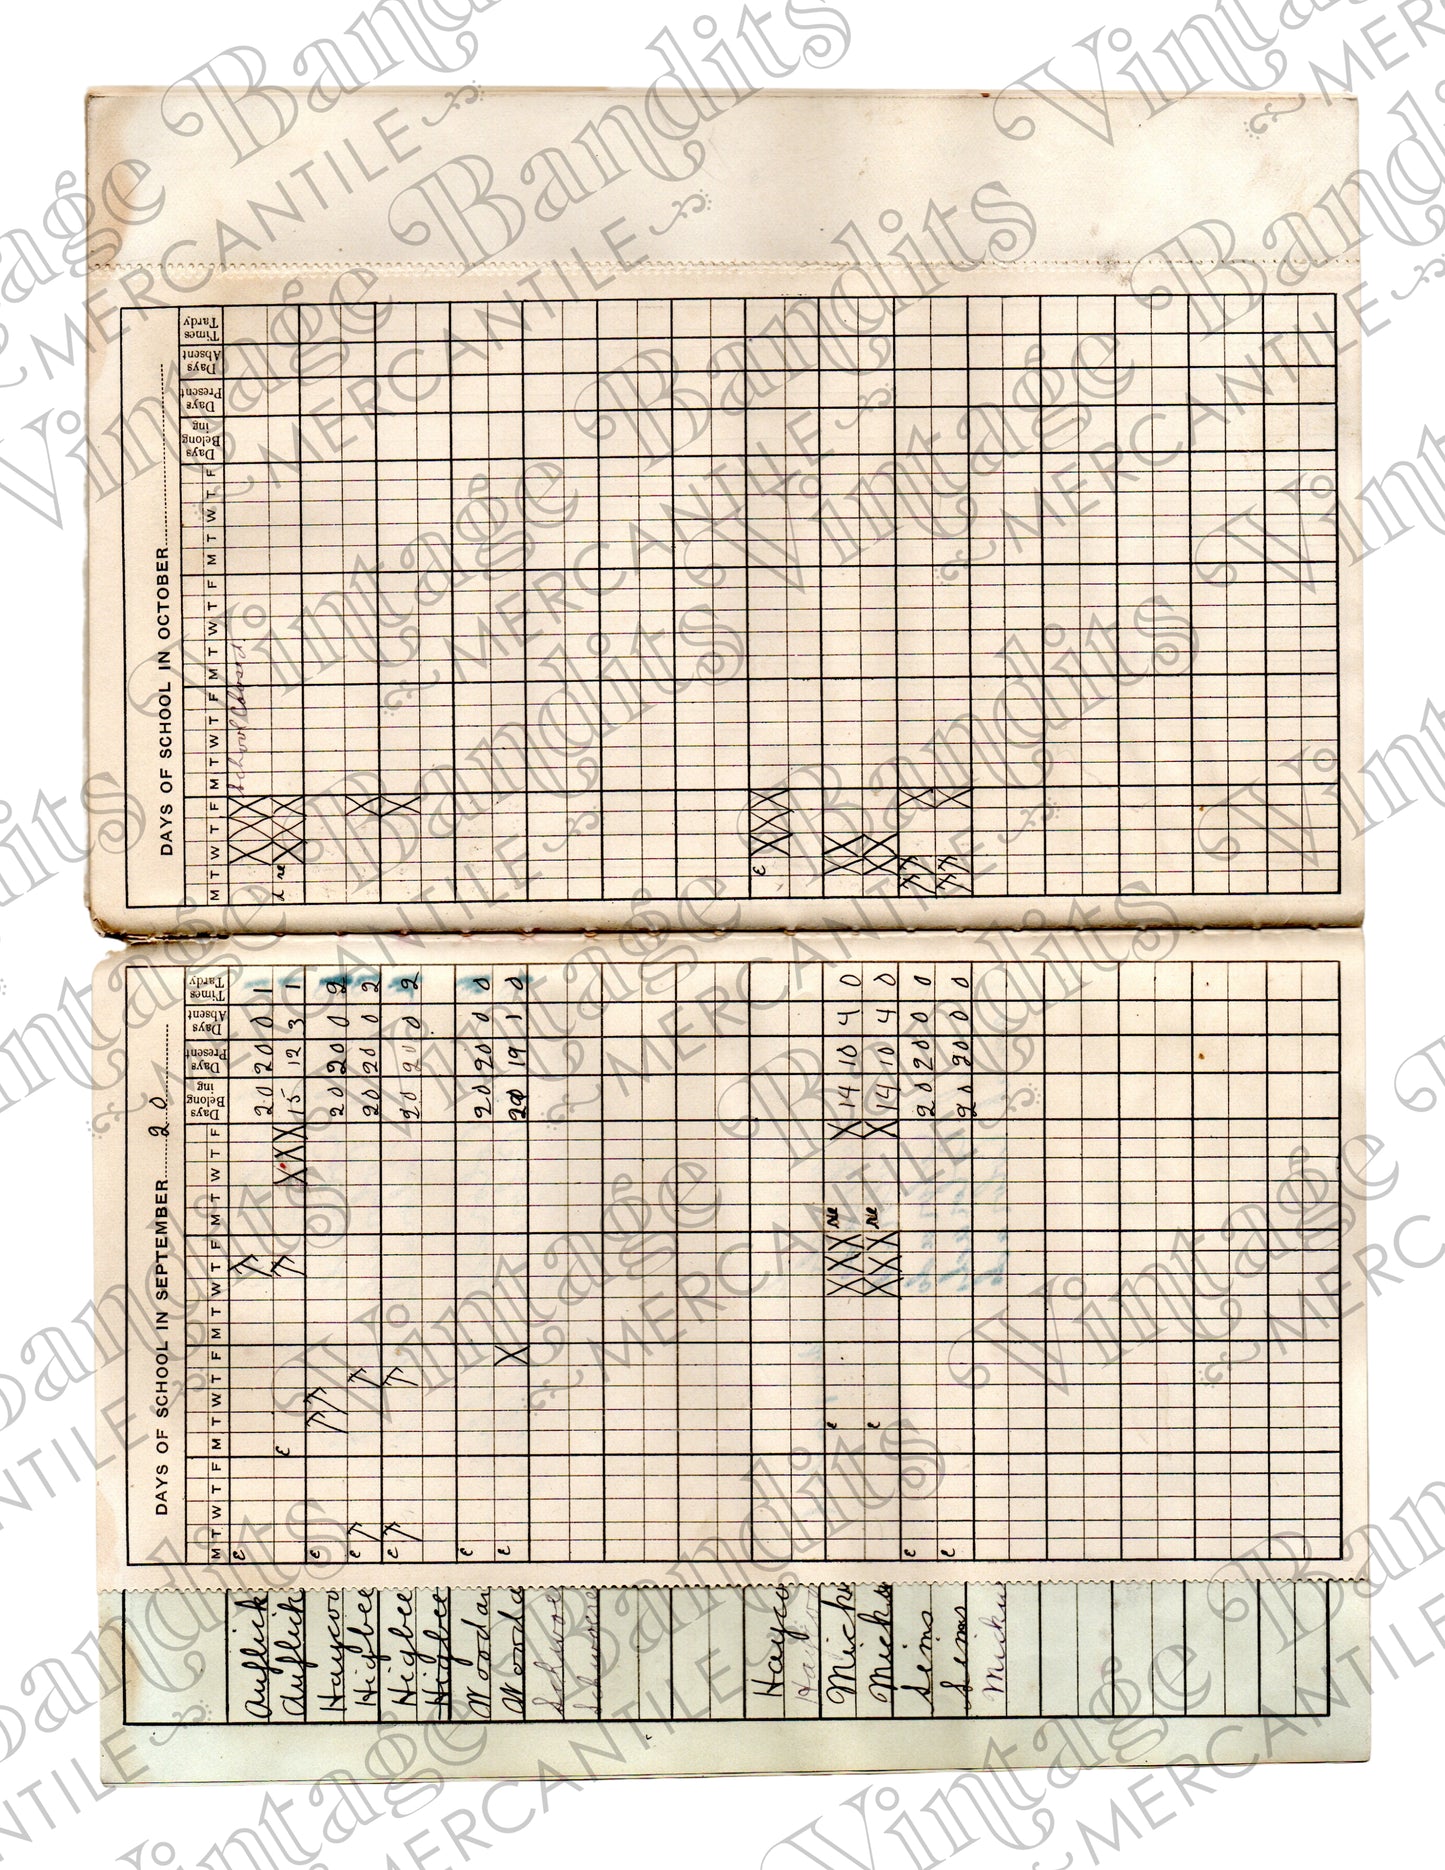 1919 Teacher's Register - Digital File